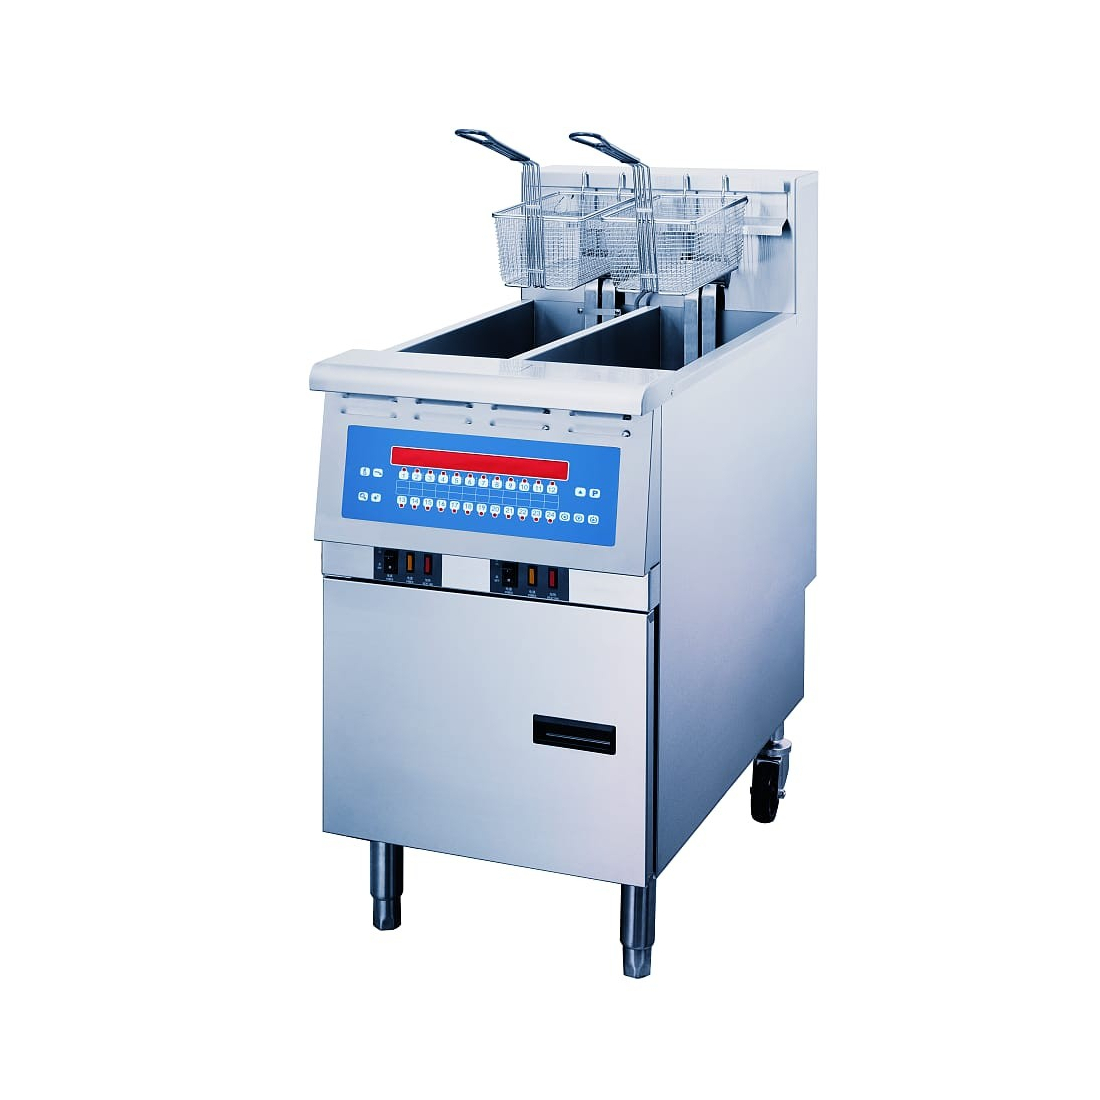 OMAJ (NTP14ES) Electric Fryer With Digital Controls Fastron 13.5X2 L - 14 KW|mkayn|مكاين